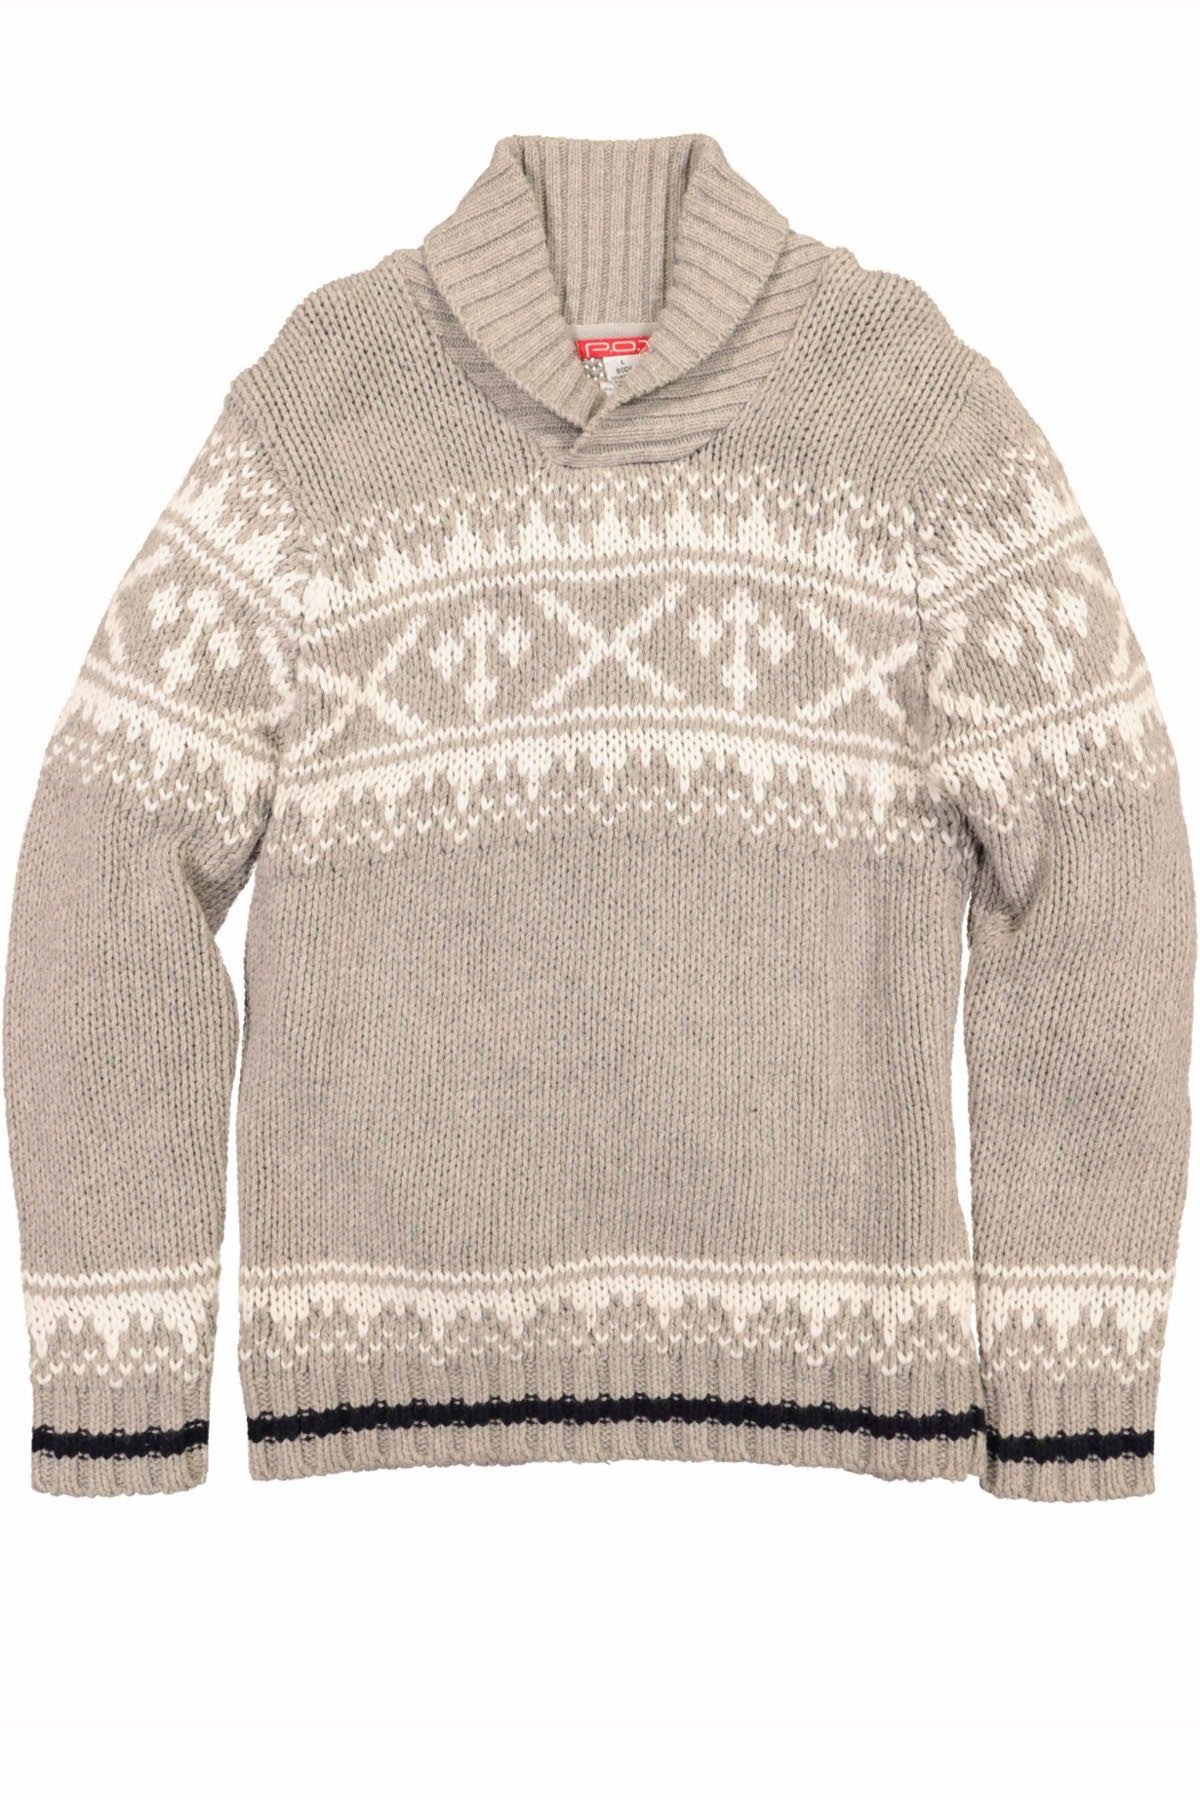 P.O.V. Grey Knit Sweater